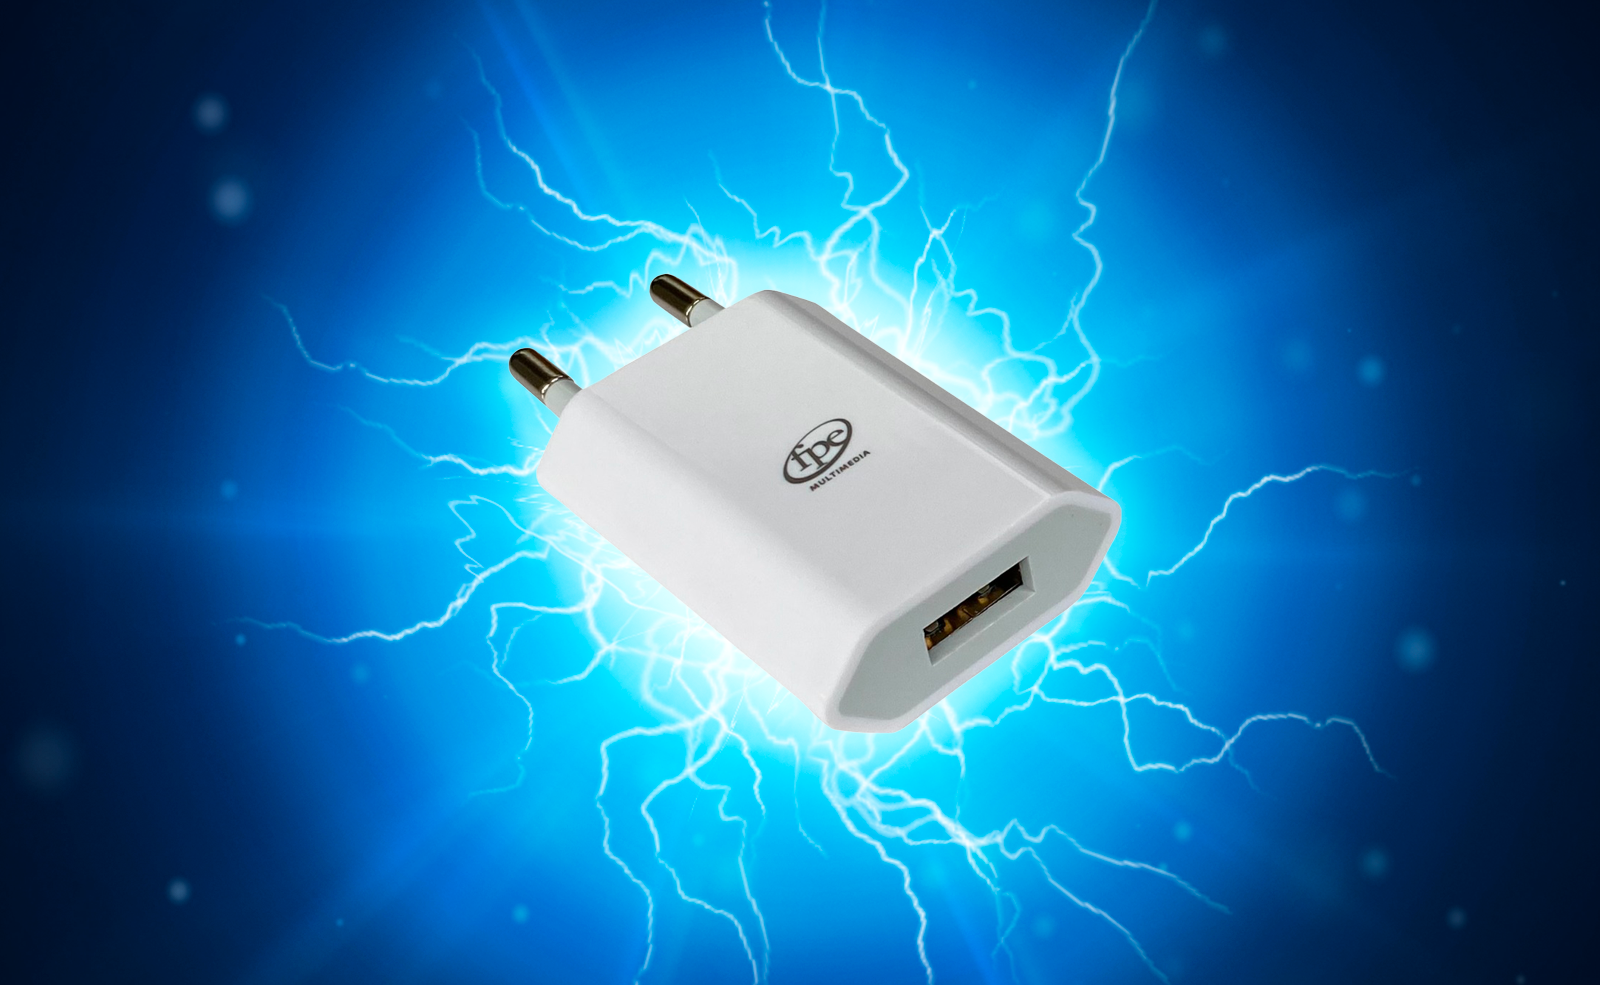 Accessoires • Rappel d’un chargeur USB pour iPhone possédant un risque d’électrocution